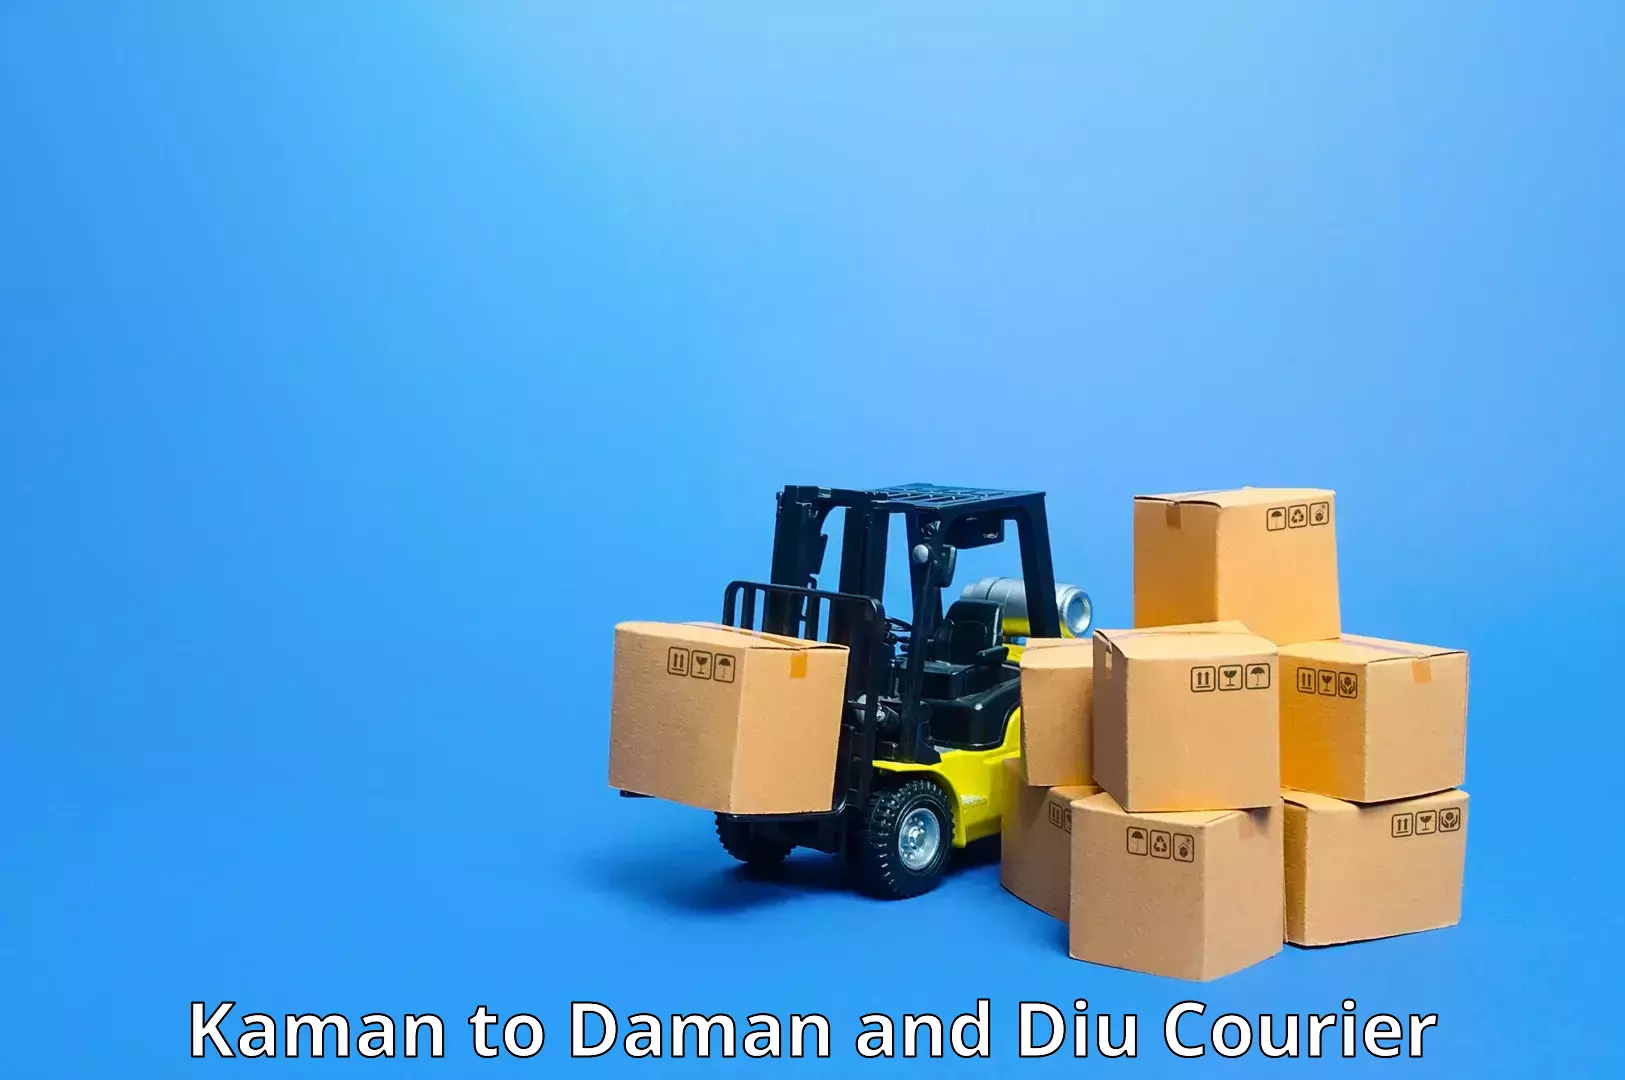 Versatile courier options Kaman to Diu